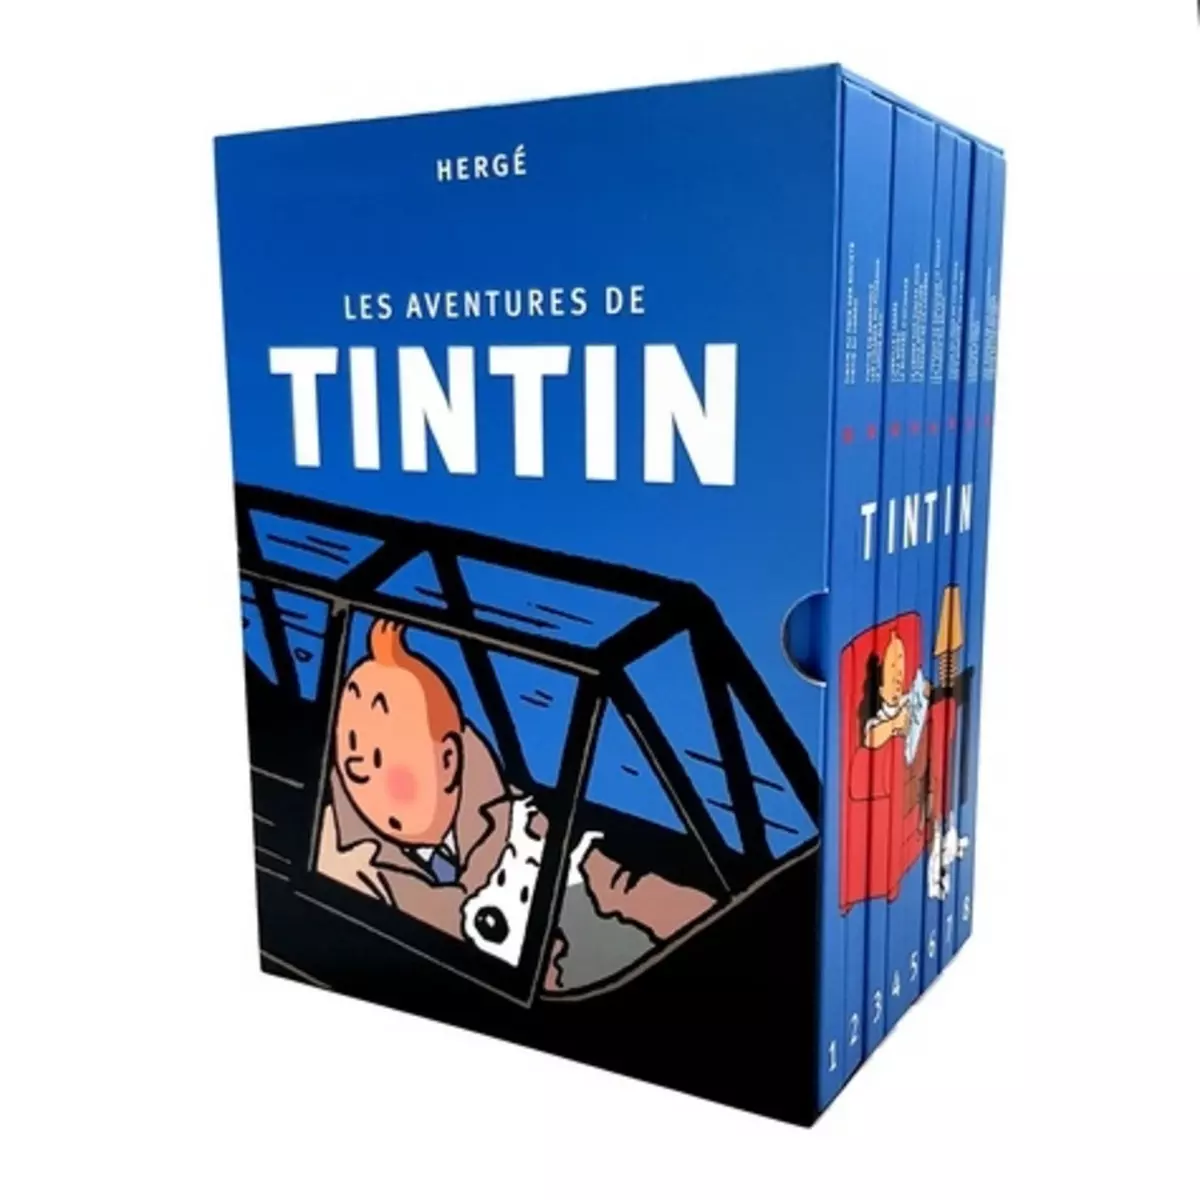  LES AVENTURES DE TINTIN INTEGRALE : COFFRET EN 8 VOLUMES, Hergé